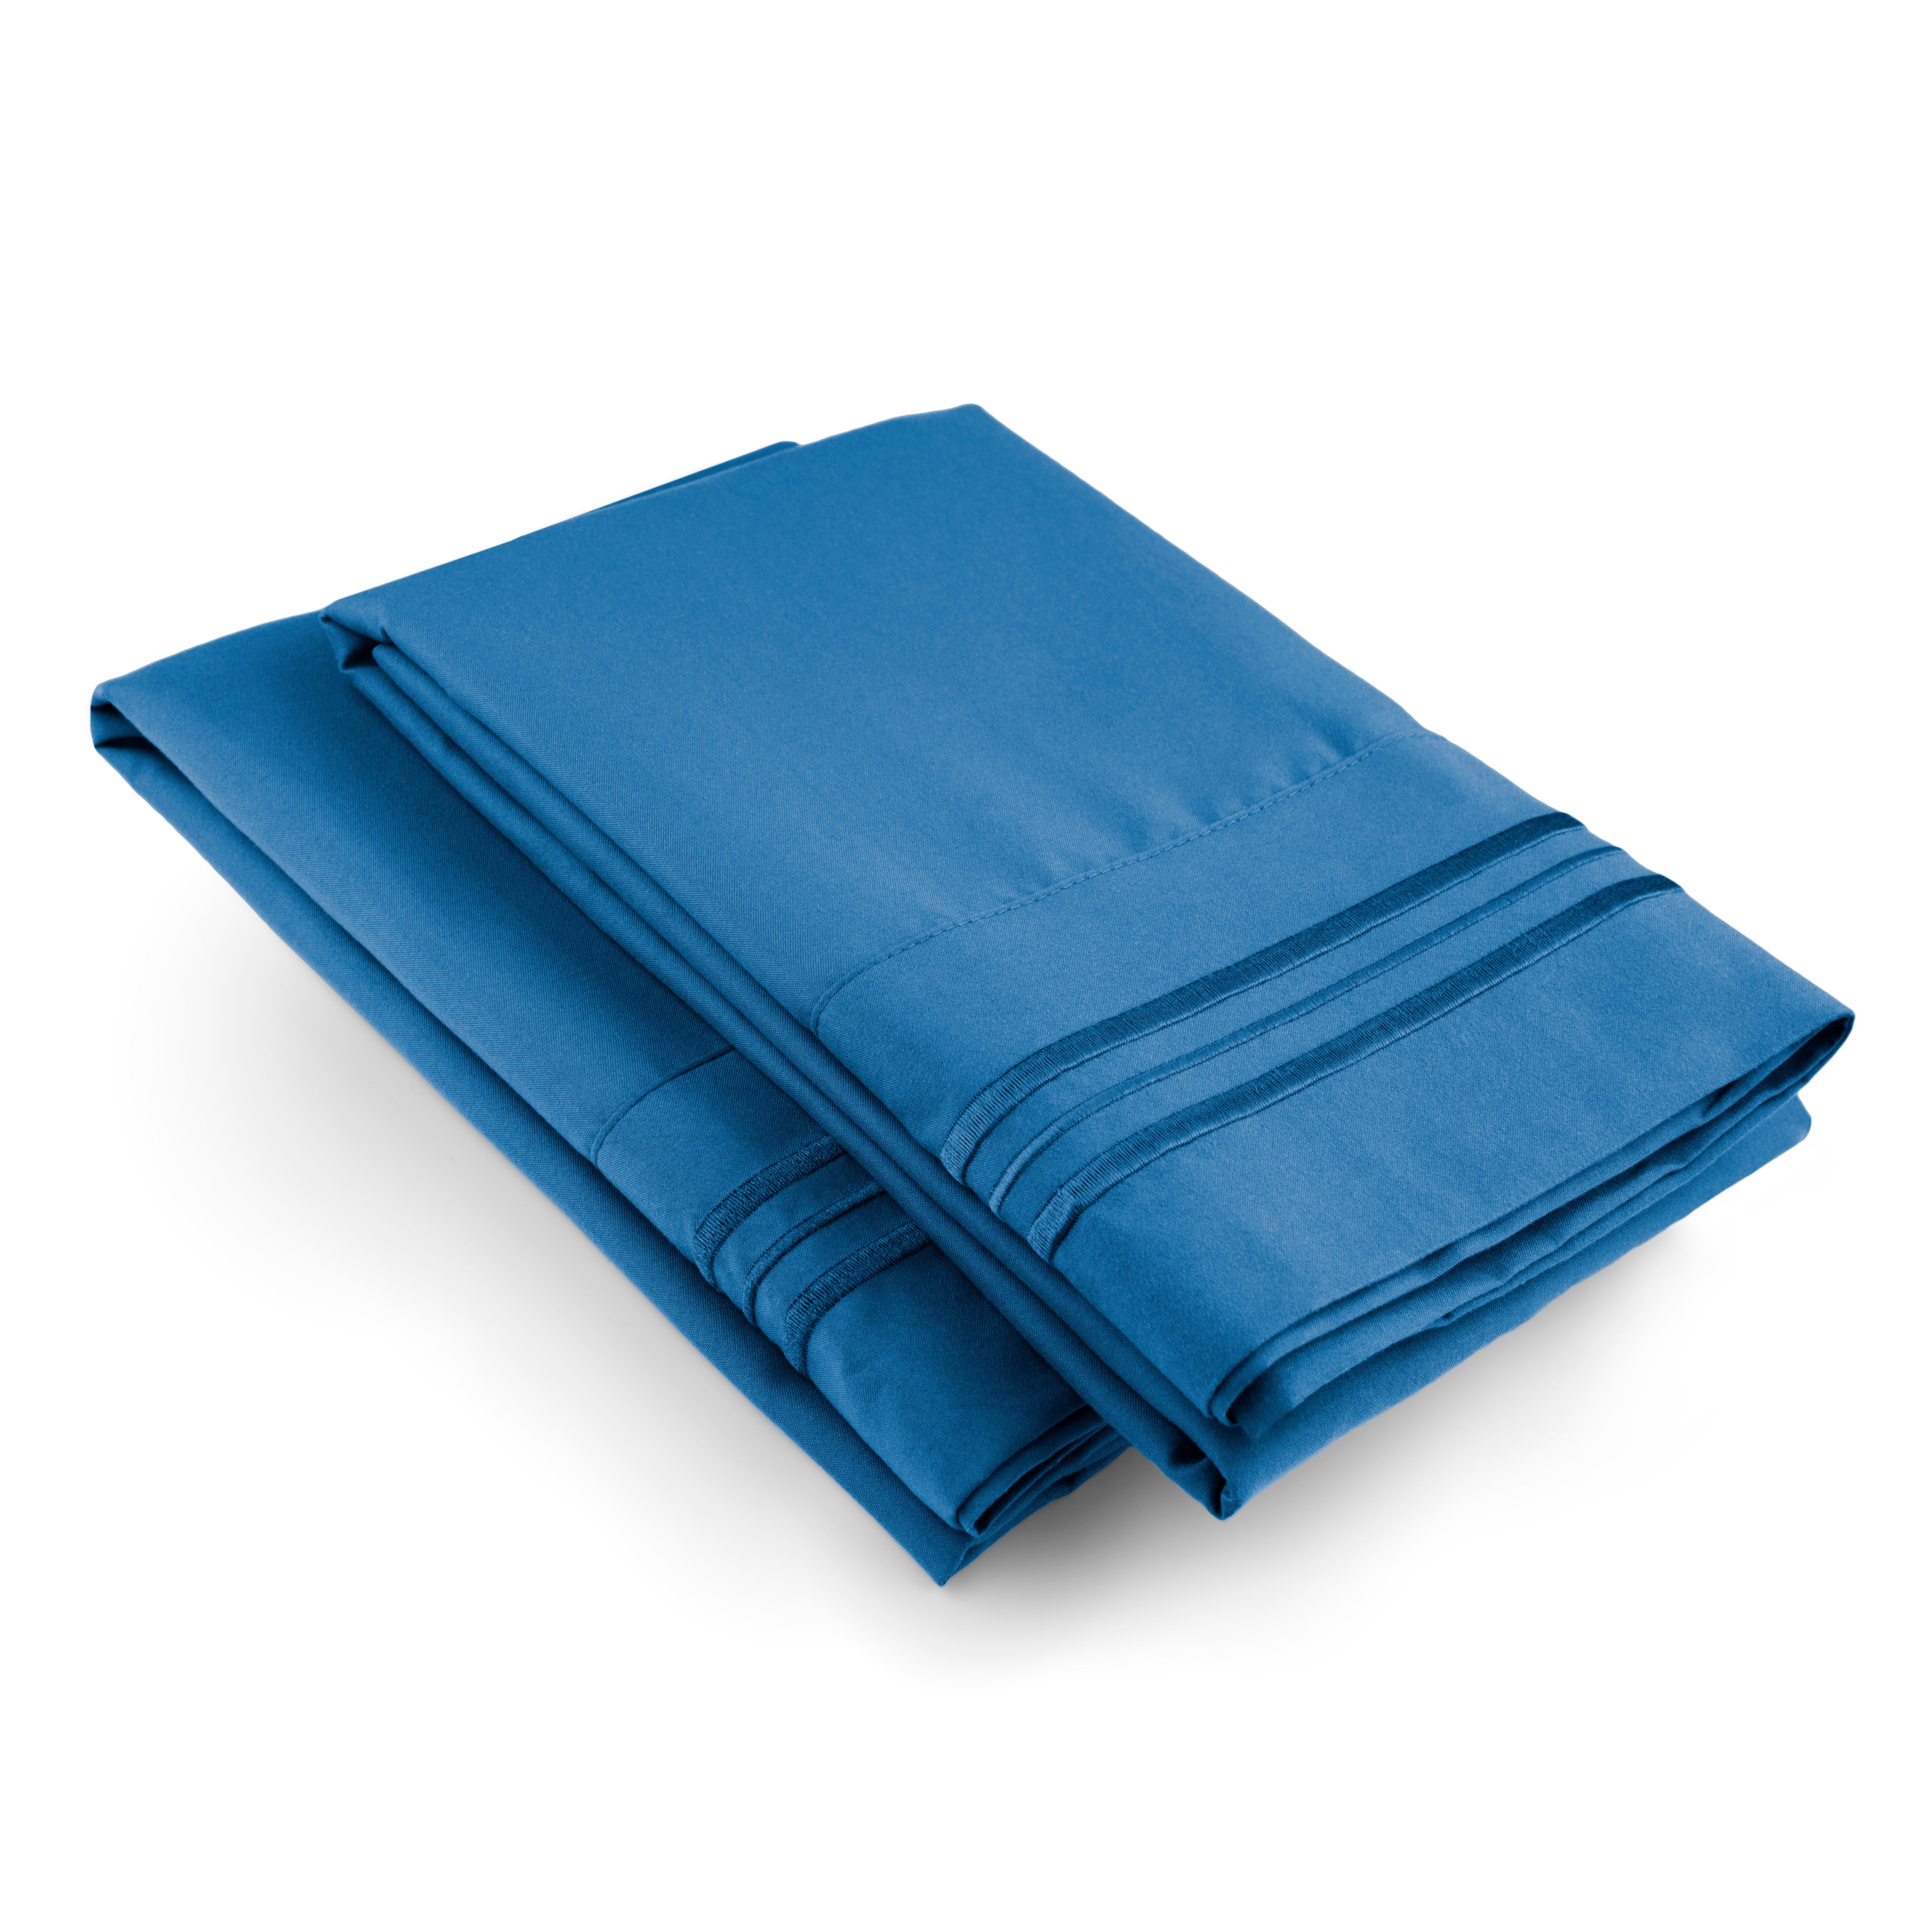 tes 2 Pillowcase Set - Royal Blue